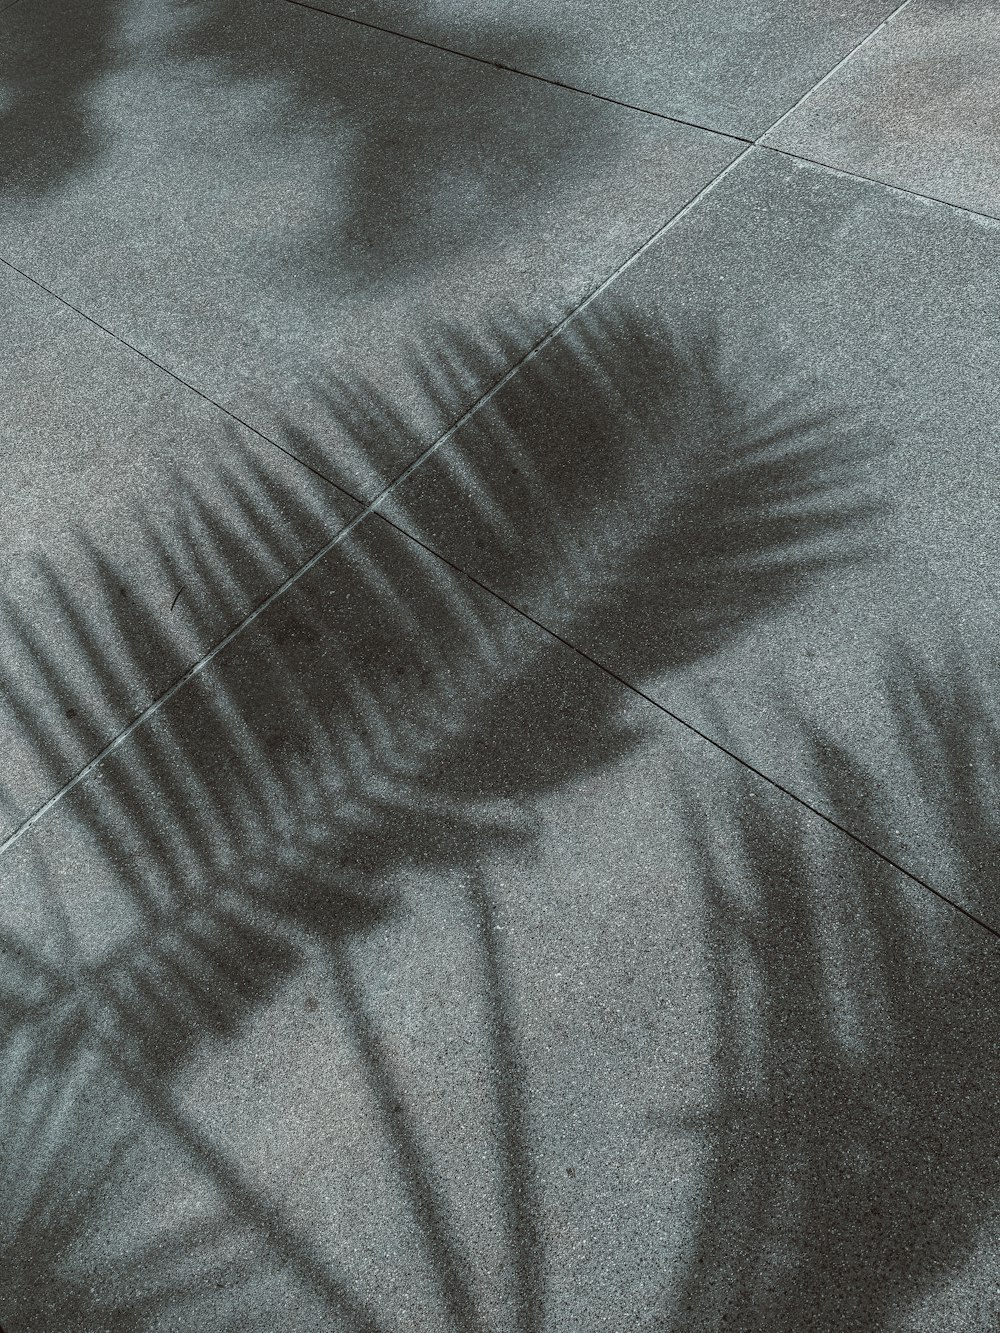 a shadow of a palm tree on a sidewalk